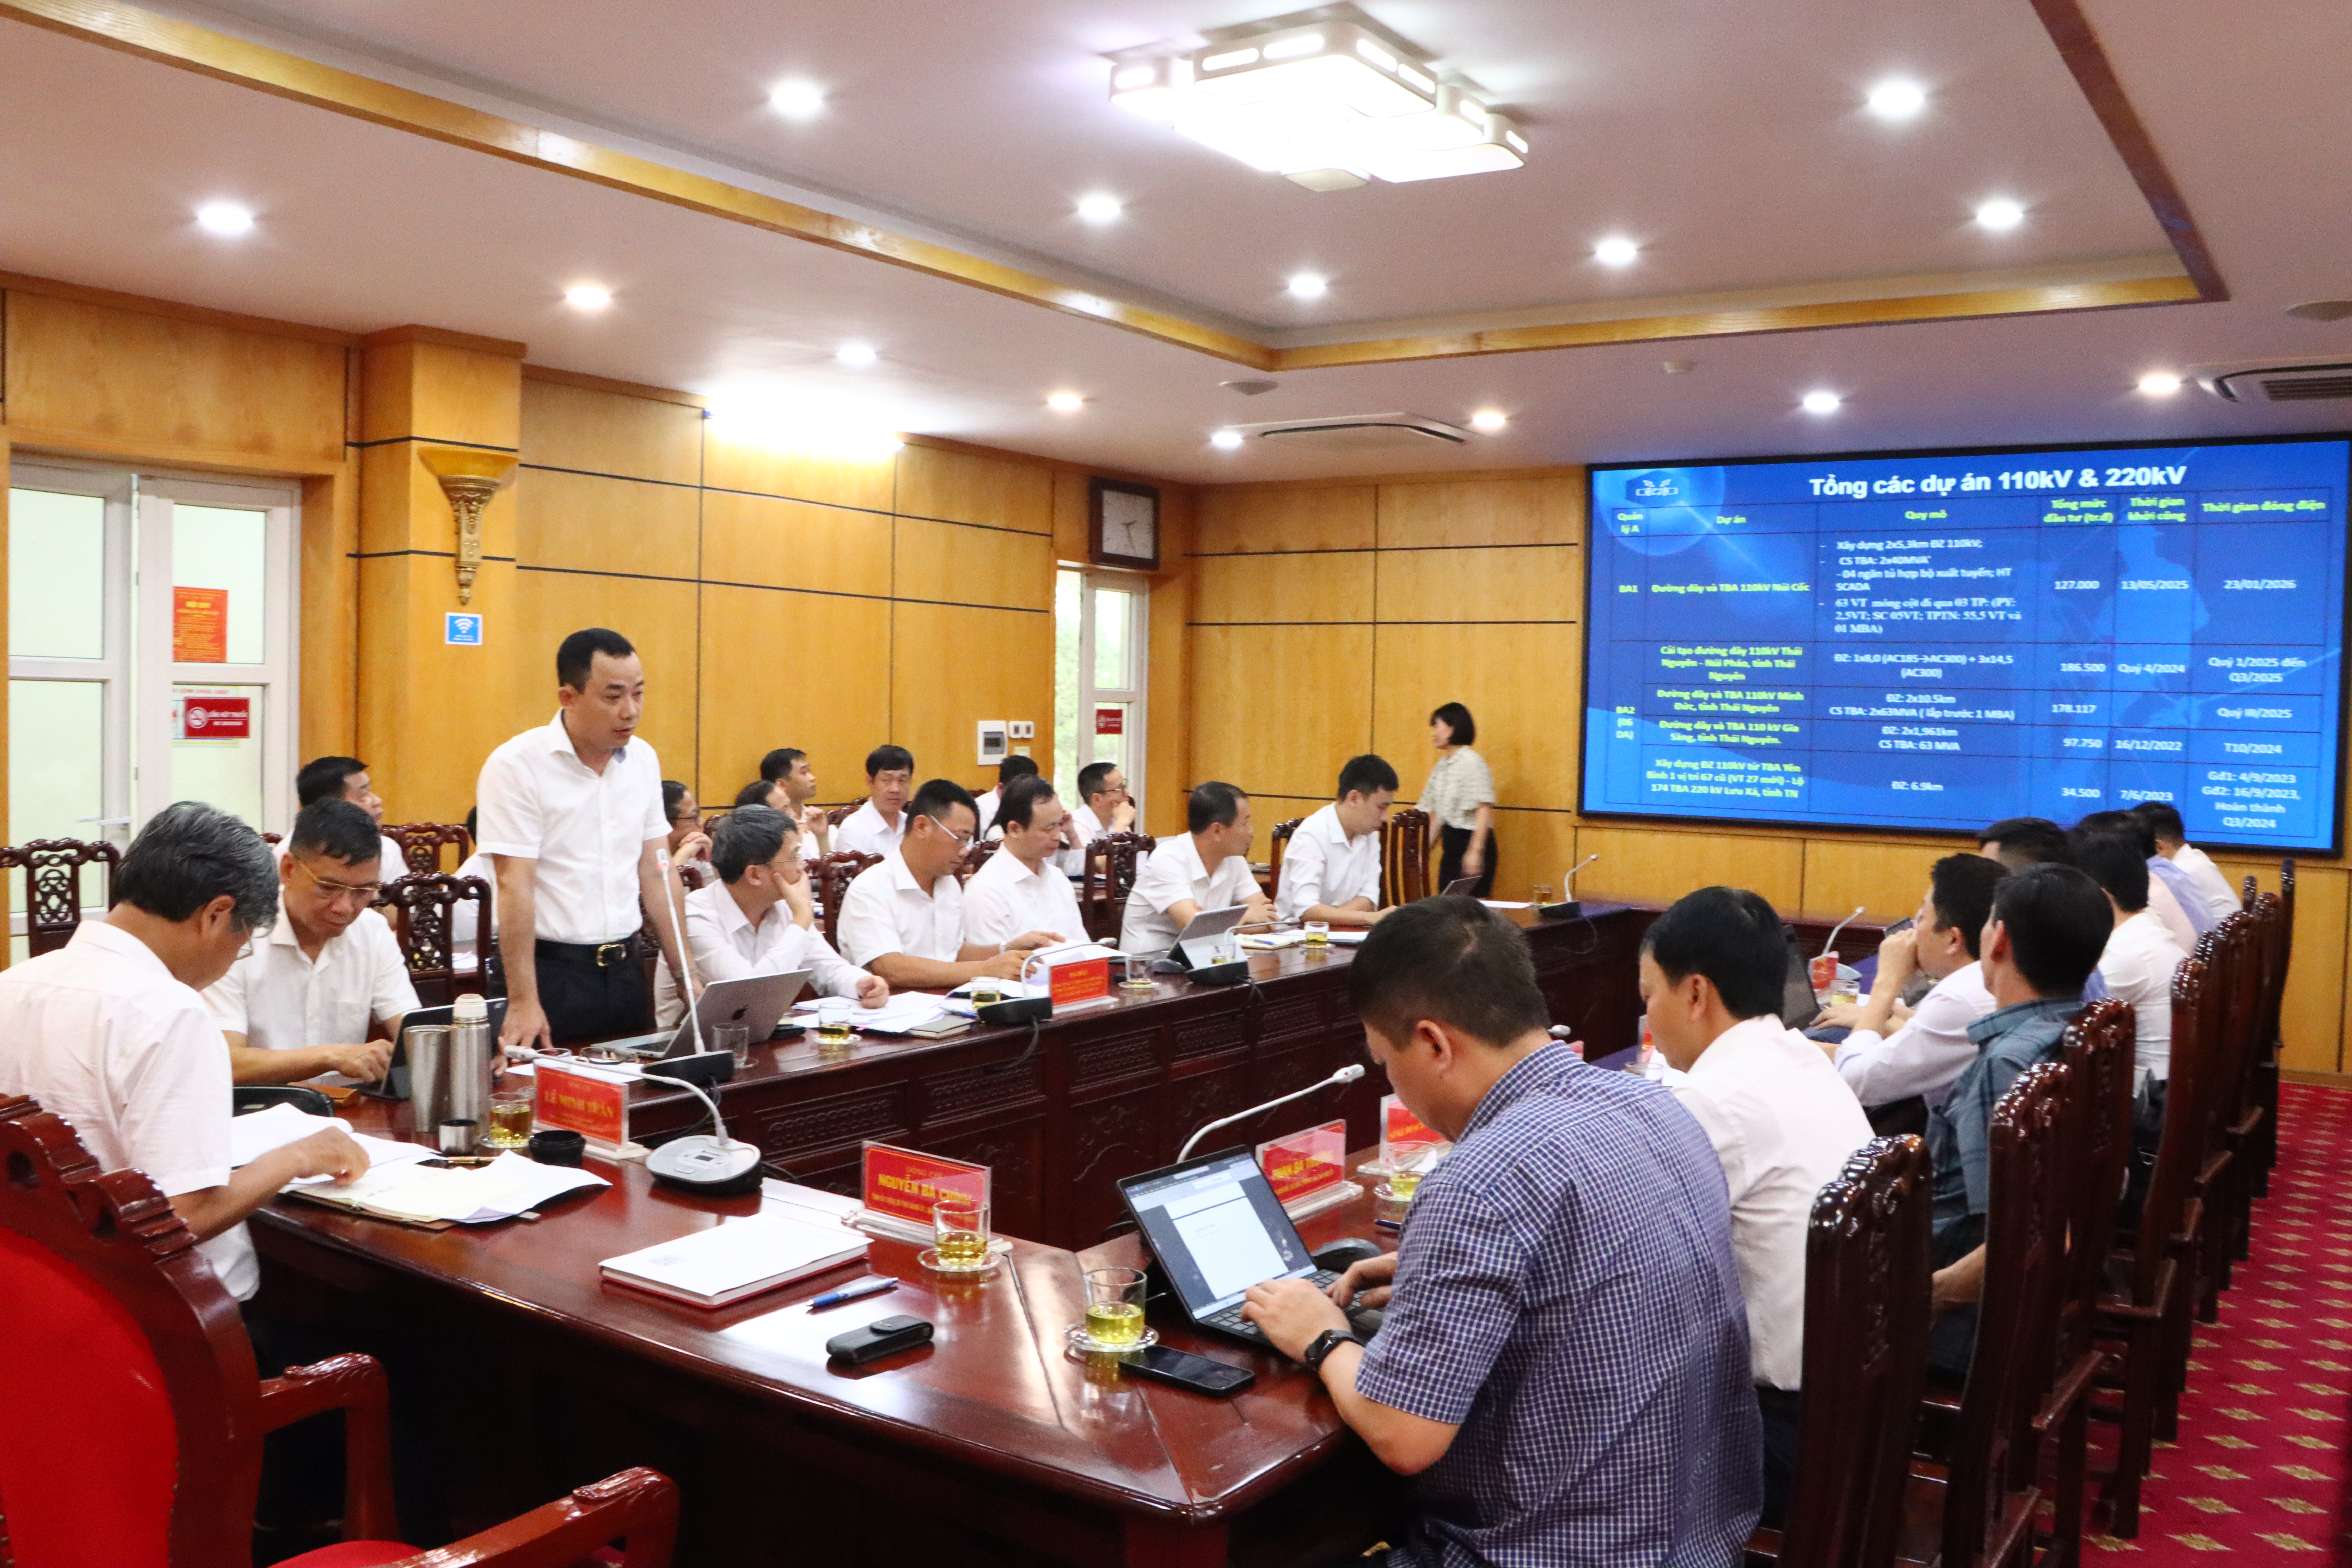 Ra soát công tác triển khai thực hiện các dự án lưới điện trên địa bàn tỉnh Thái Nguyên